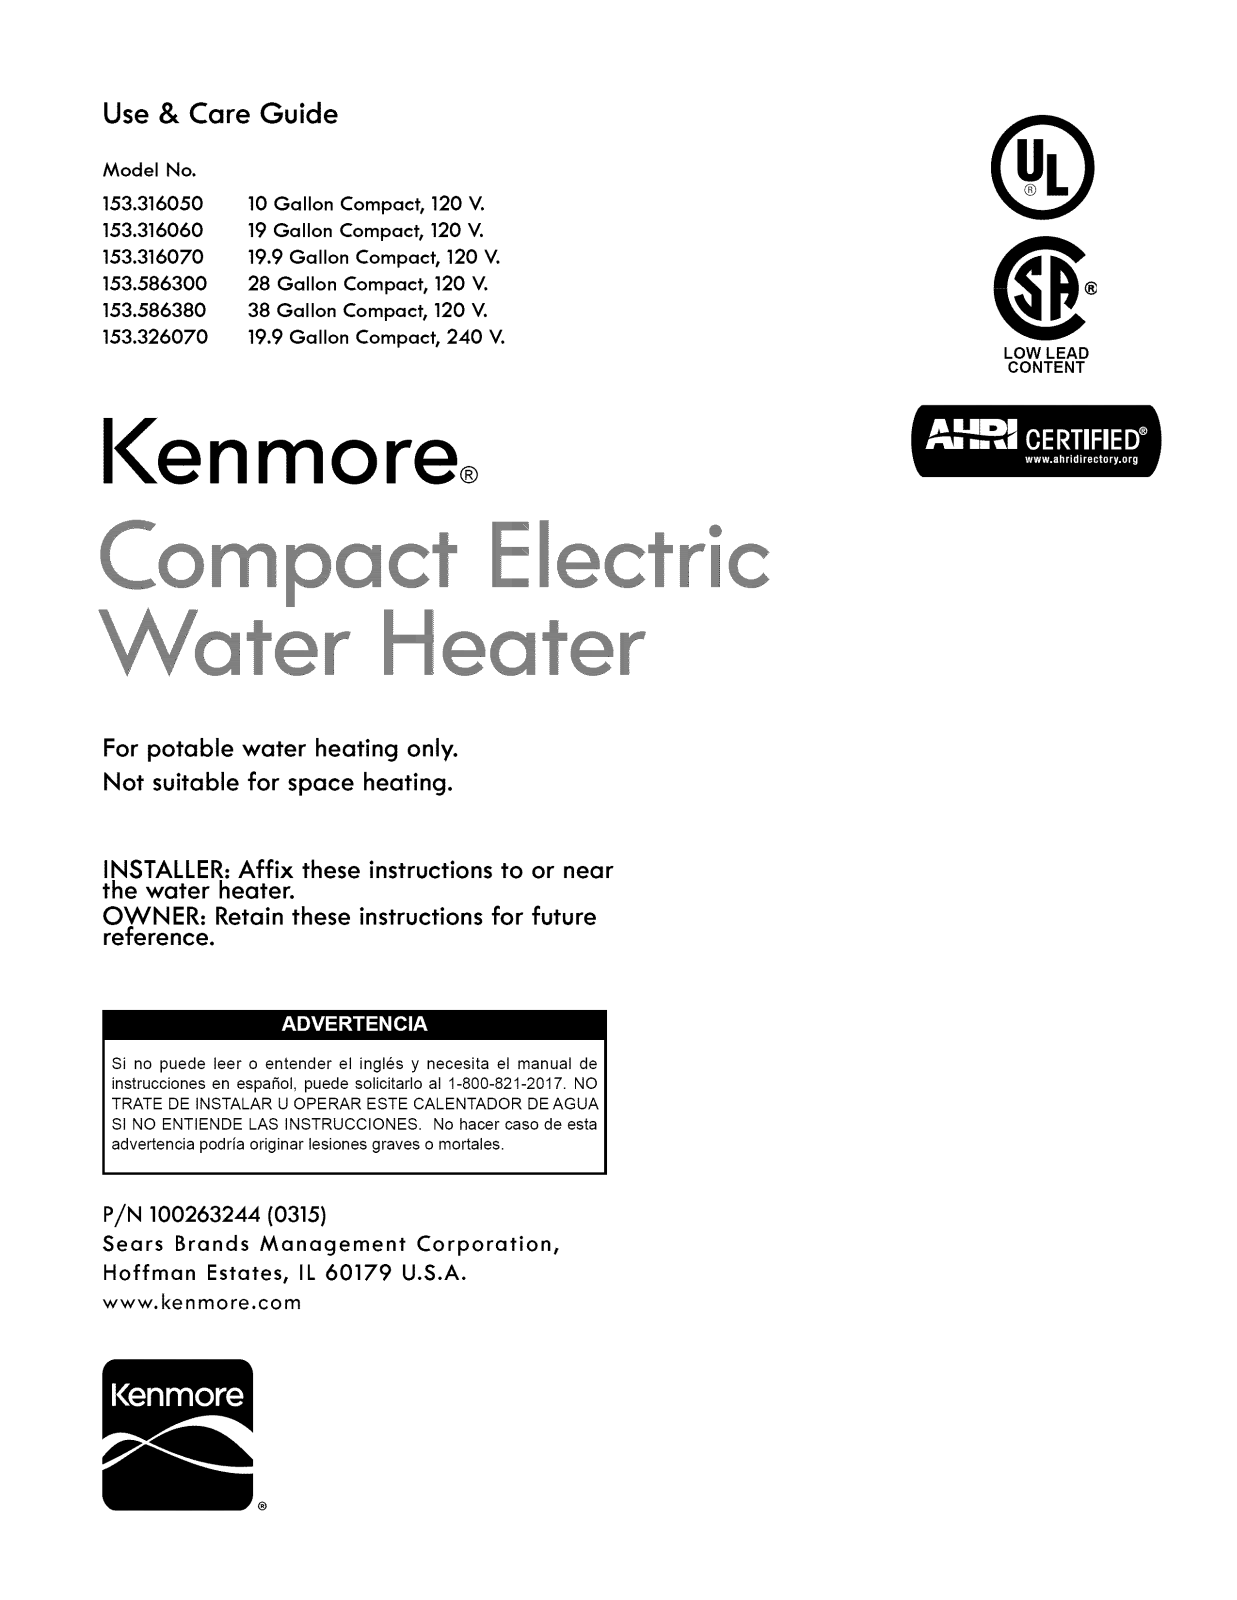 Kenmore 153586380, 153586300, 153326070, 153316070, 153316060 Owner’s Manual